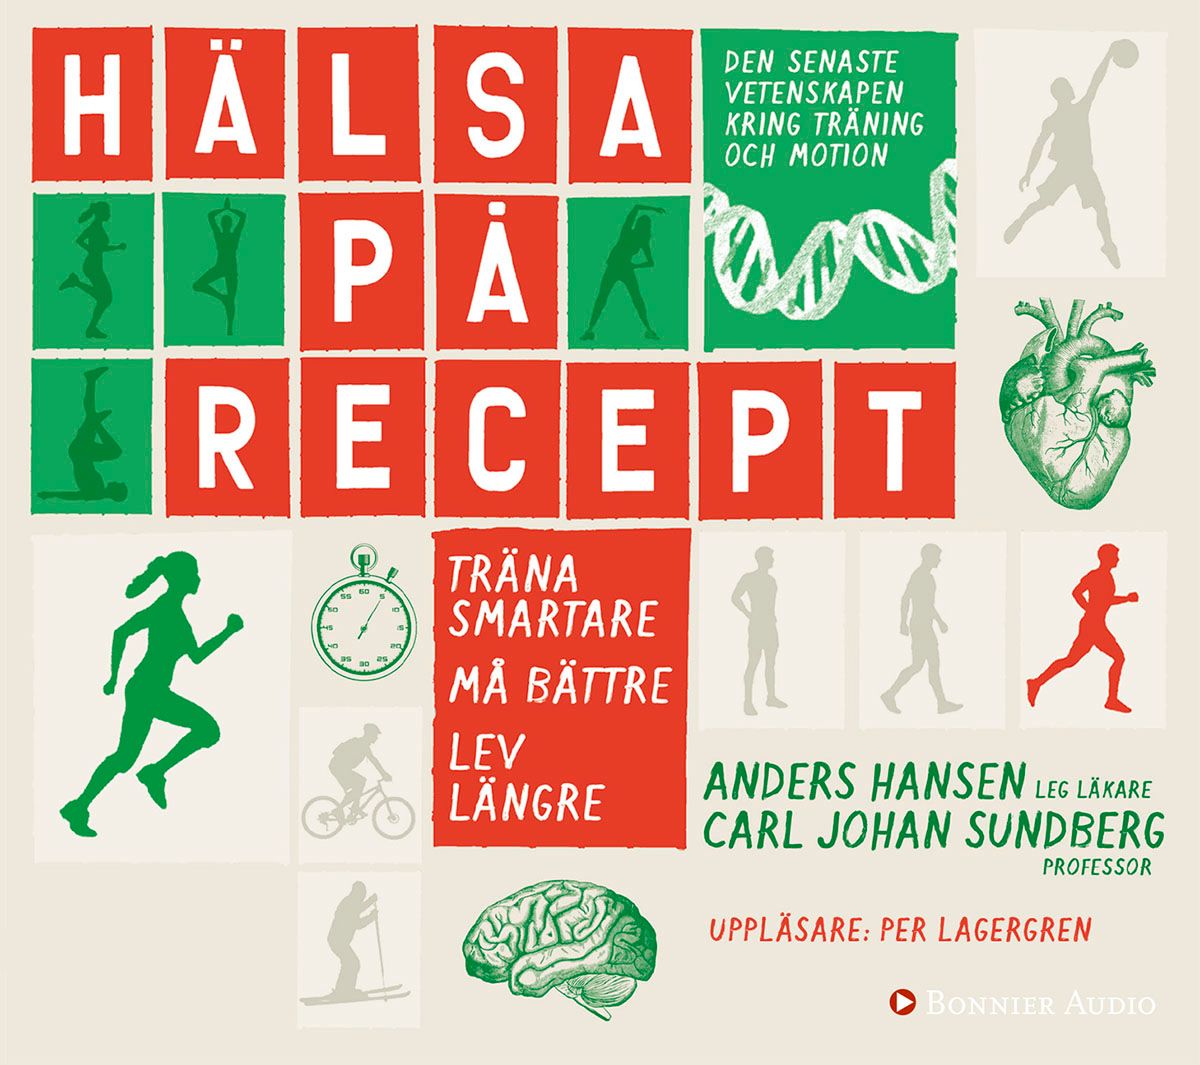 Hälsa på recept : träna smartare, må bättre, lev längre, audiobook by Anders Hansen, Carl Johan Sundberg